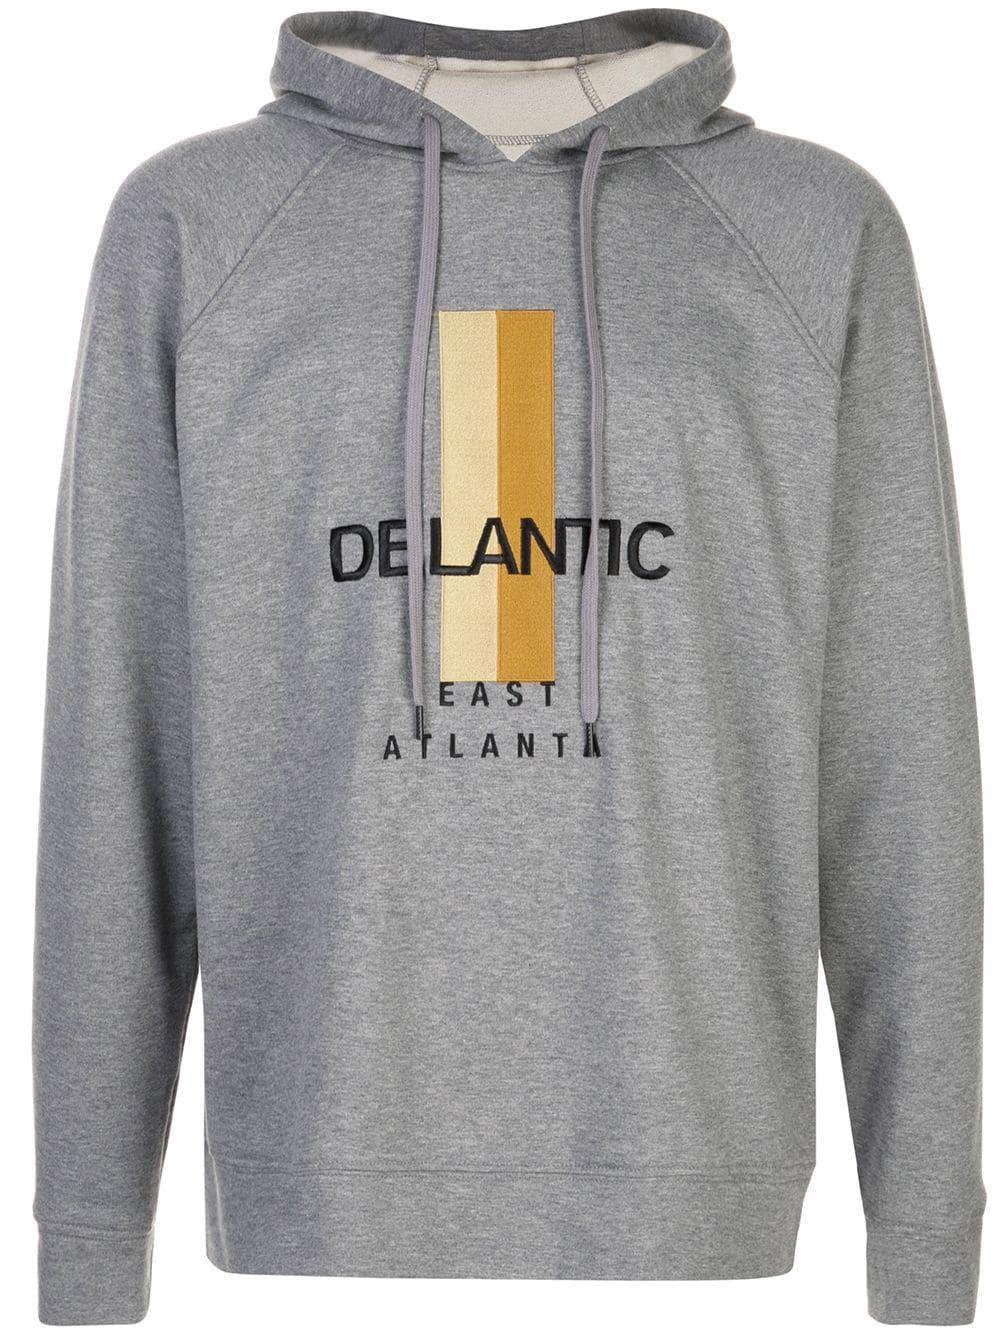 East Atlanta Runway fleece hoodie by DELANTIC